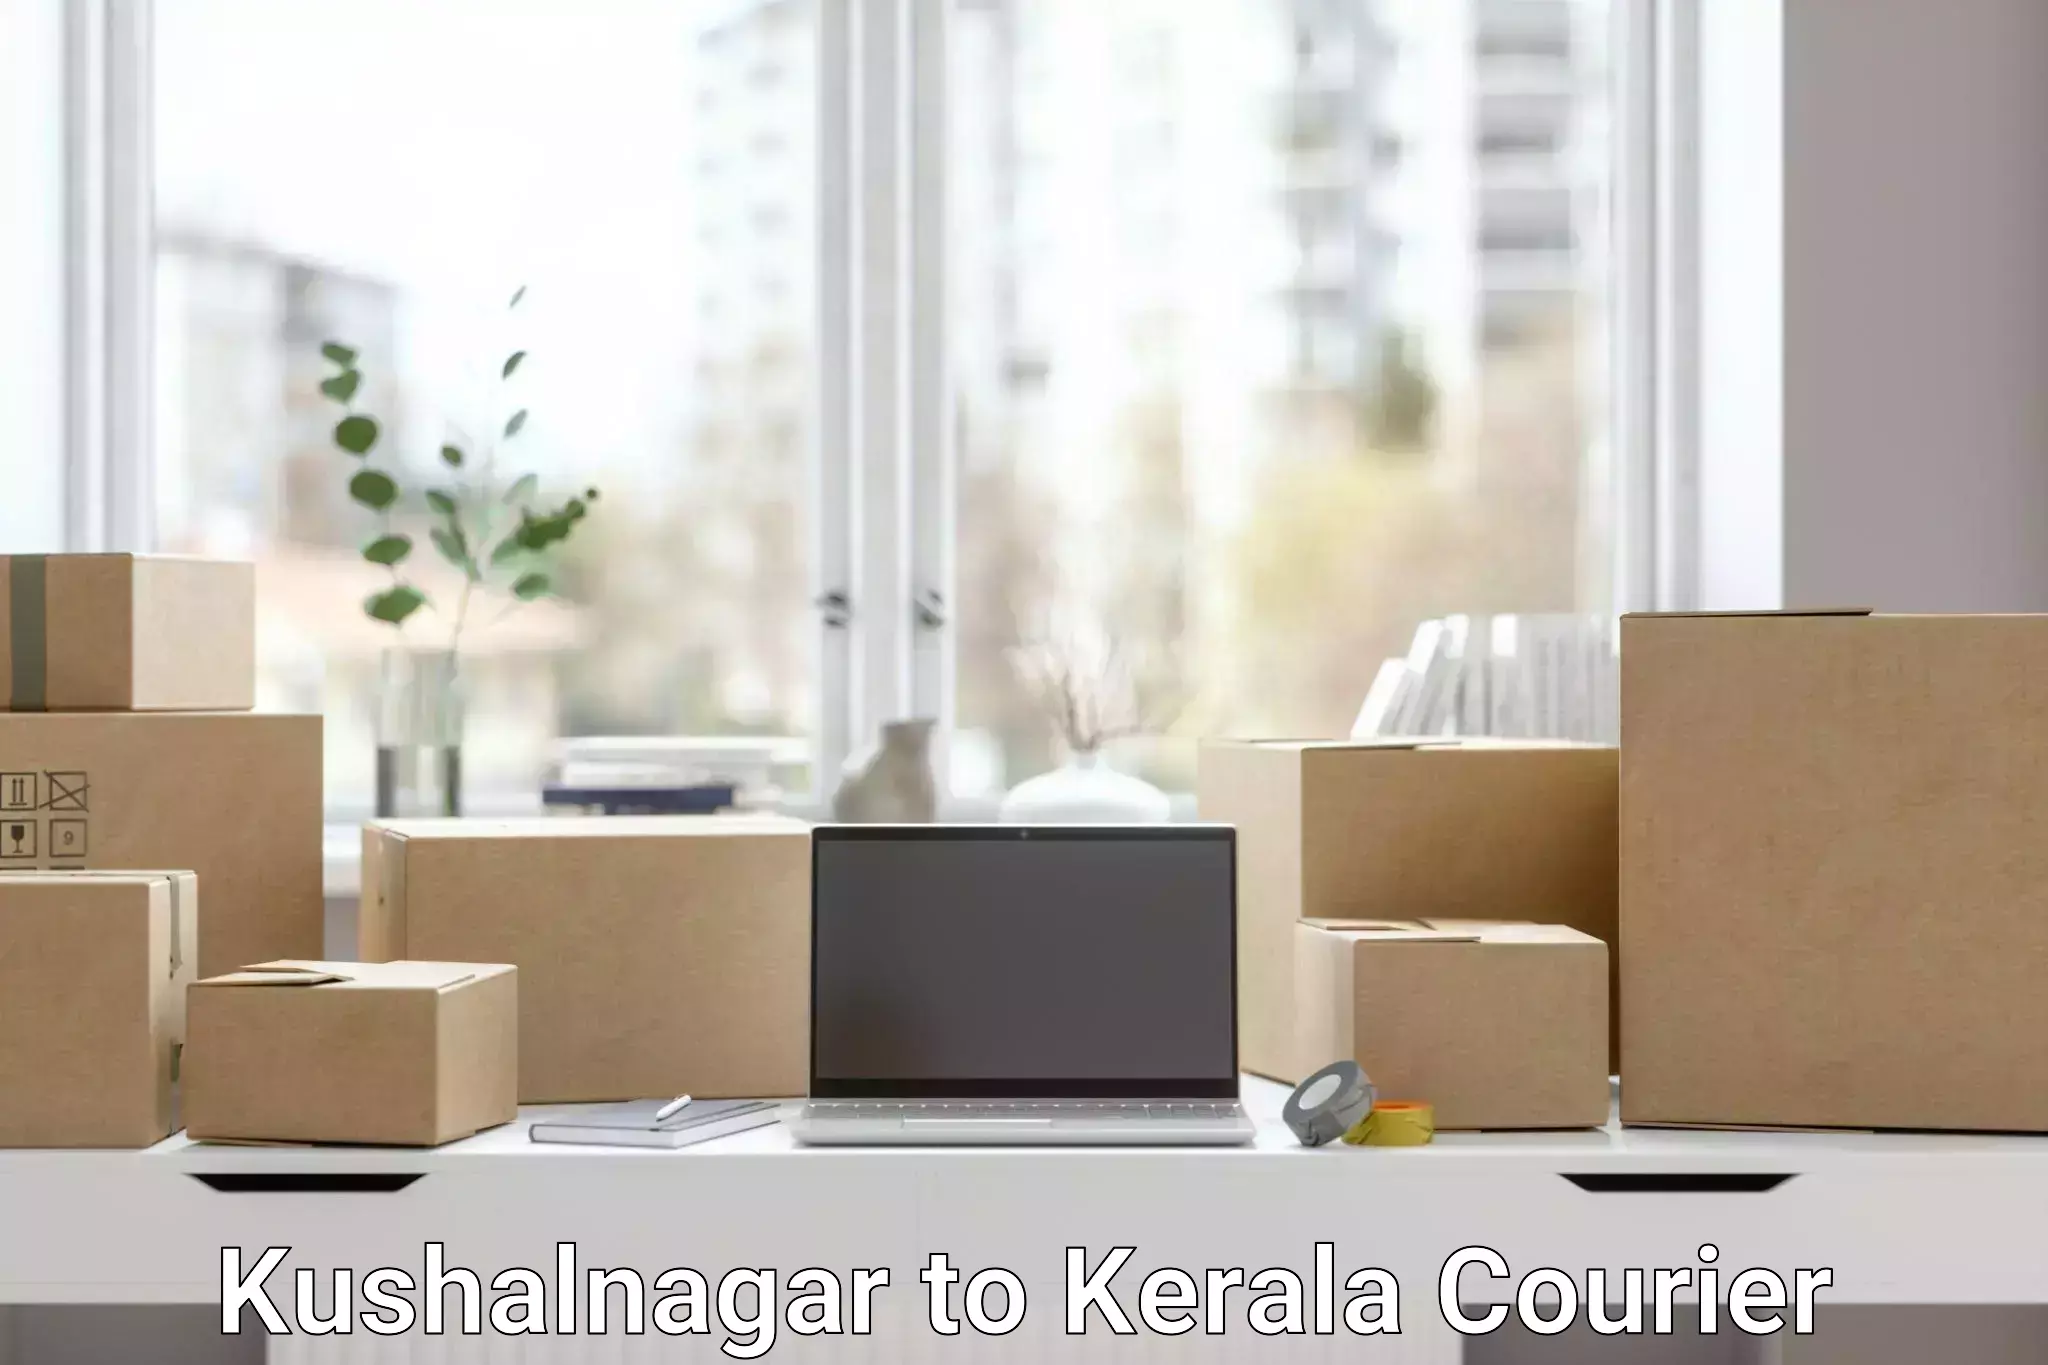 Urban courier service Kushalnagar to Chungathara